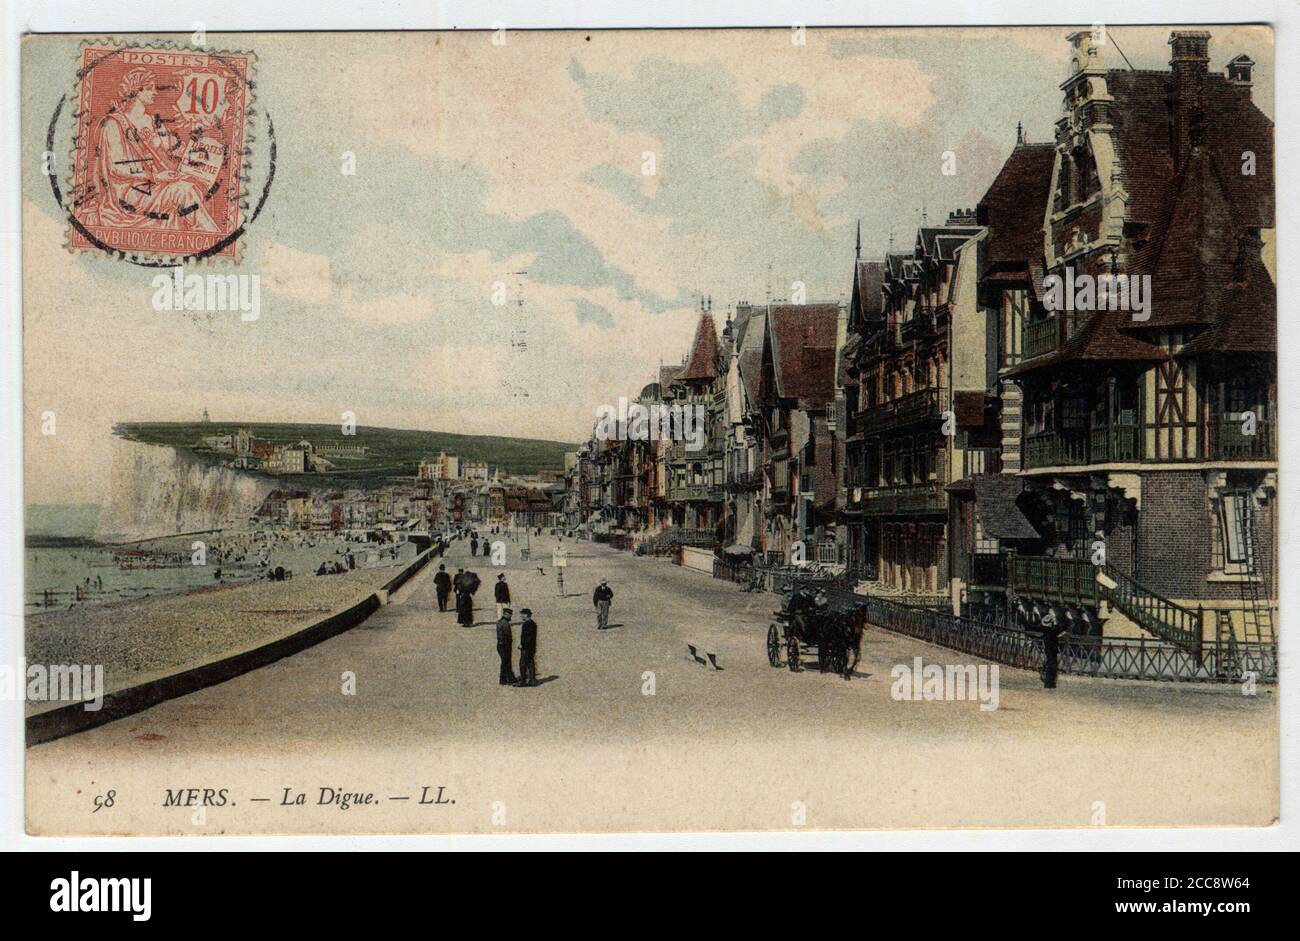 Picardie, Somme (80), Mers les Bains (Mers-les-Bains) : vue de la Digue - carte postale fin 19eme-debut 20eme siecle Foto Stock